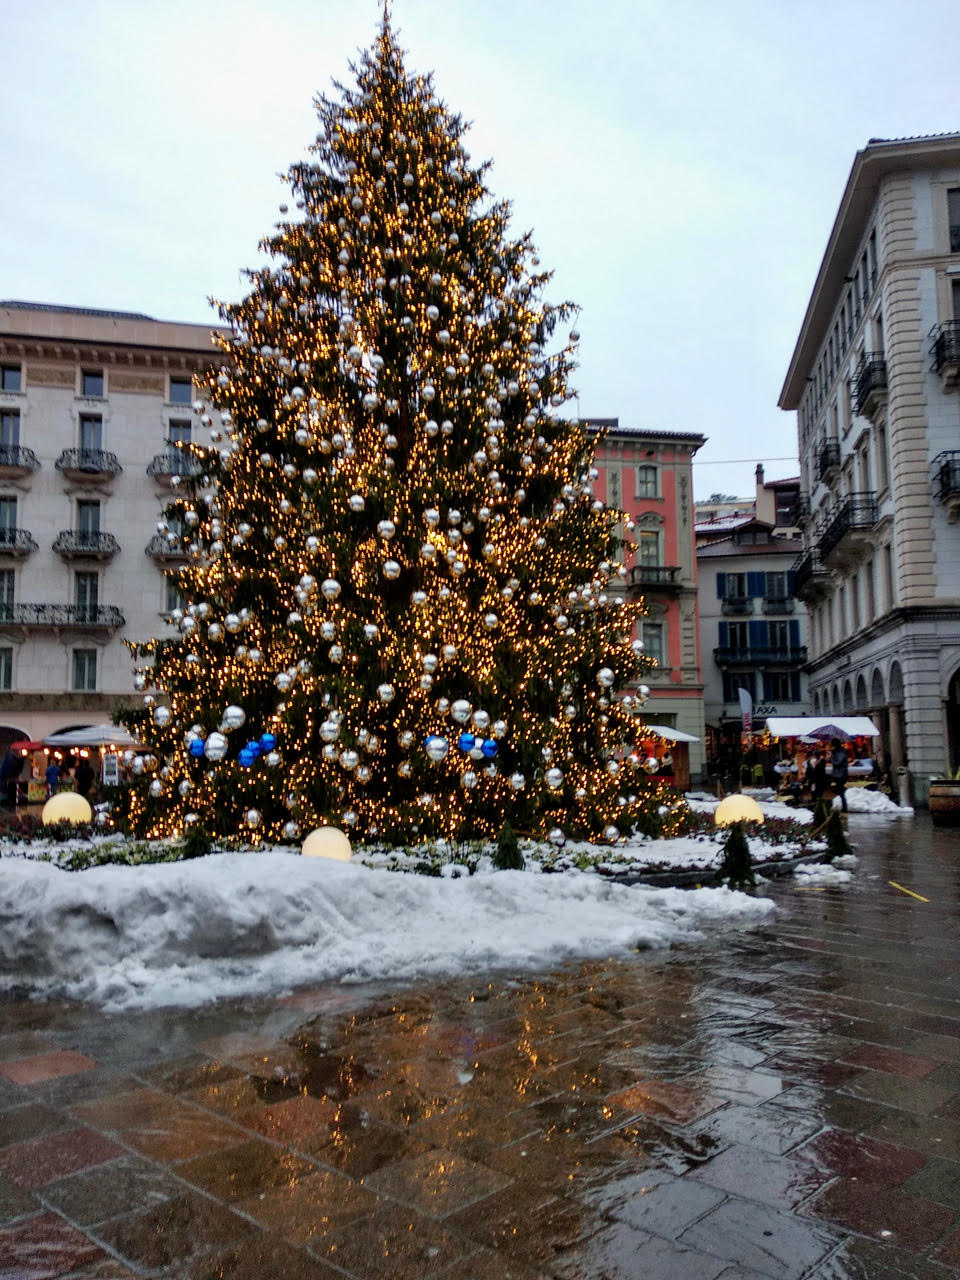 R. Sergi: Snowy Lugano 2